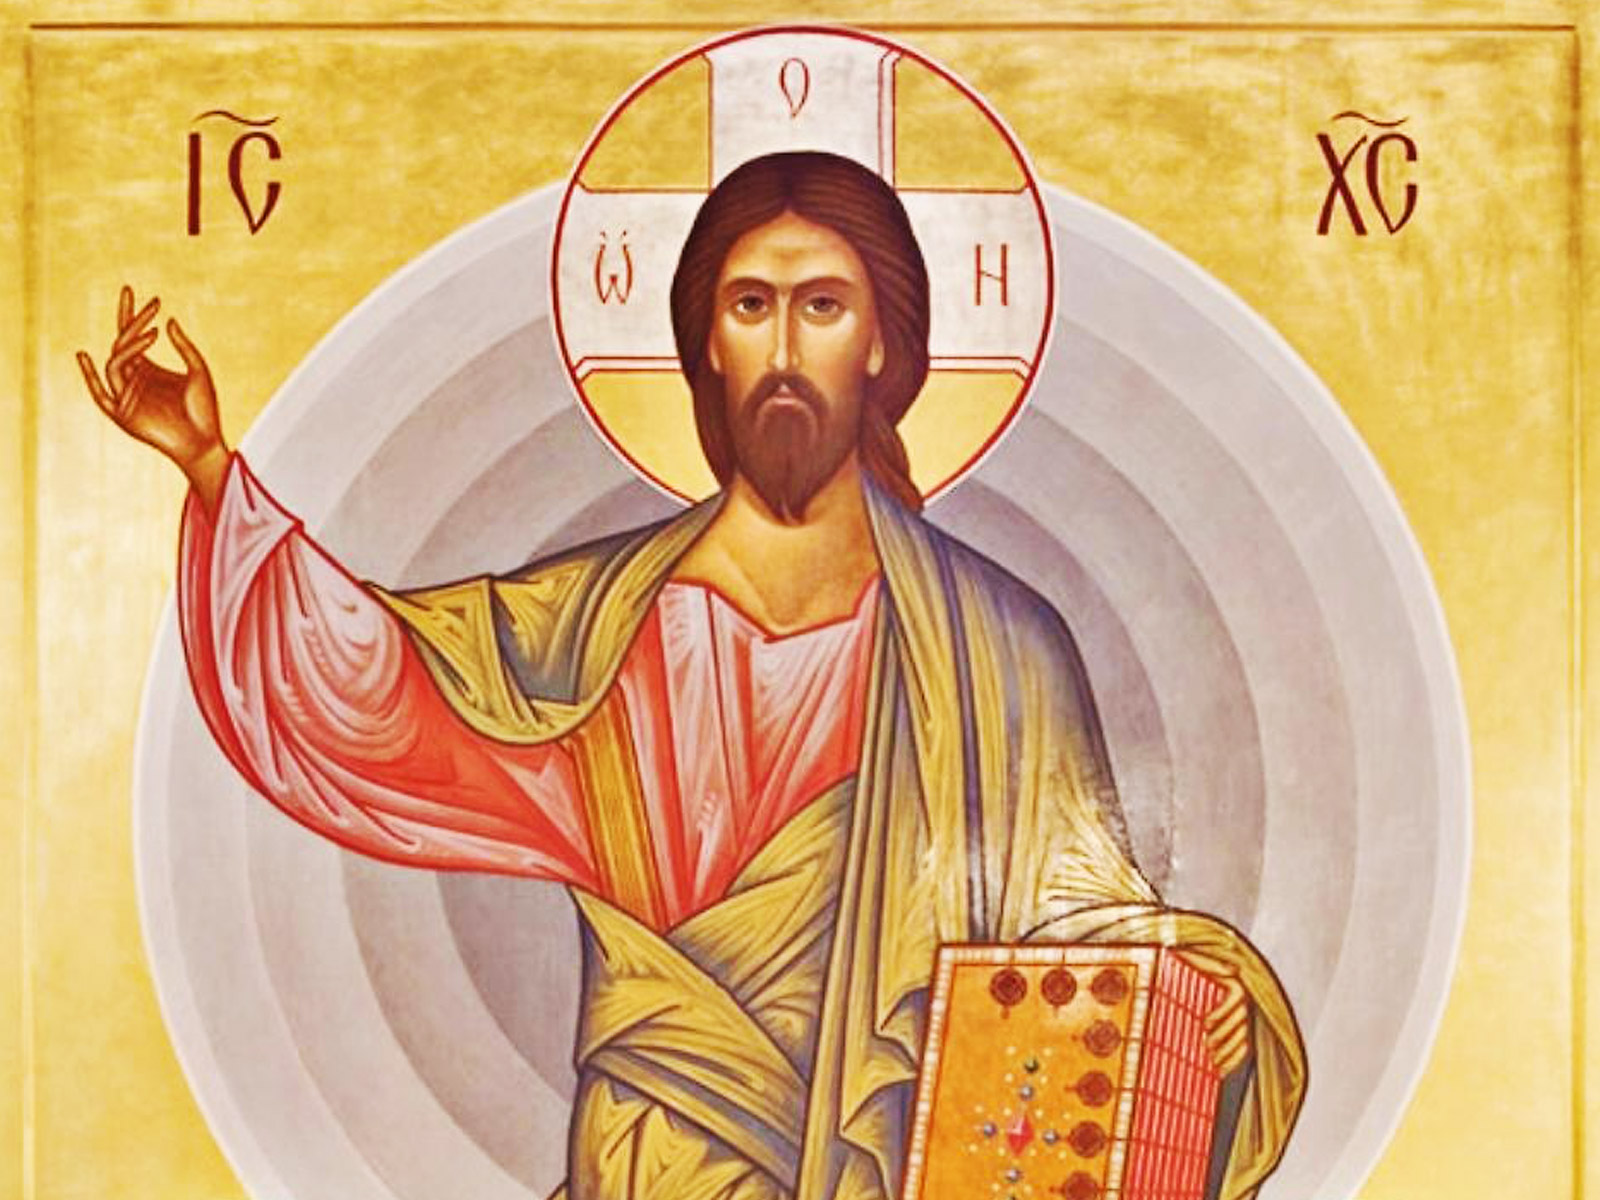 Jesus Cristo: a história da figura central do cristianismo